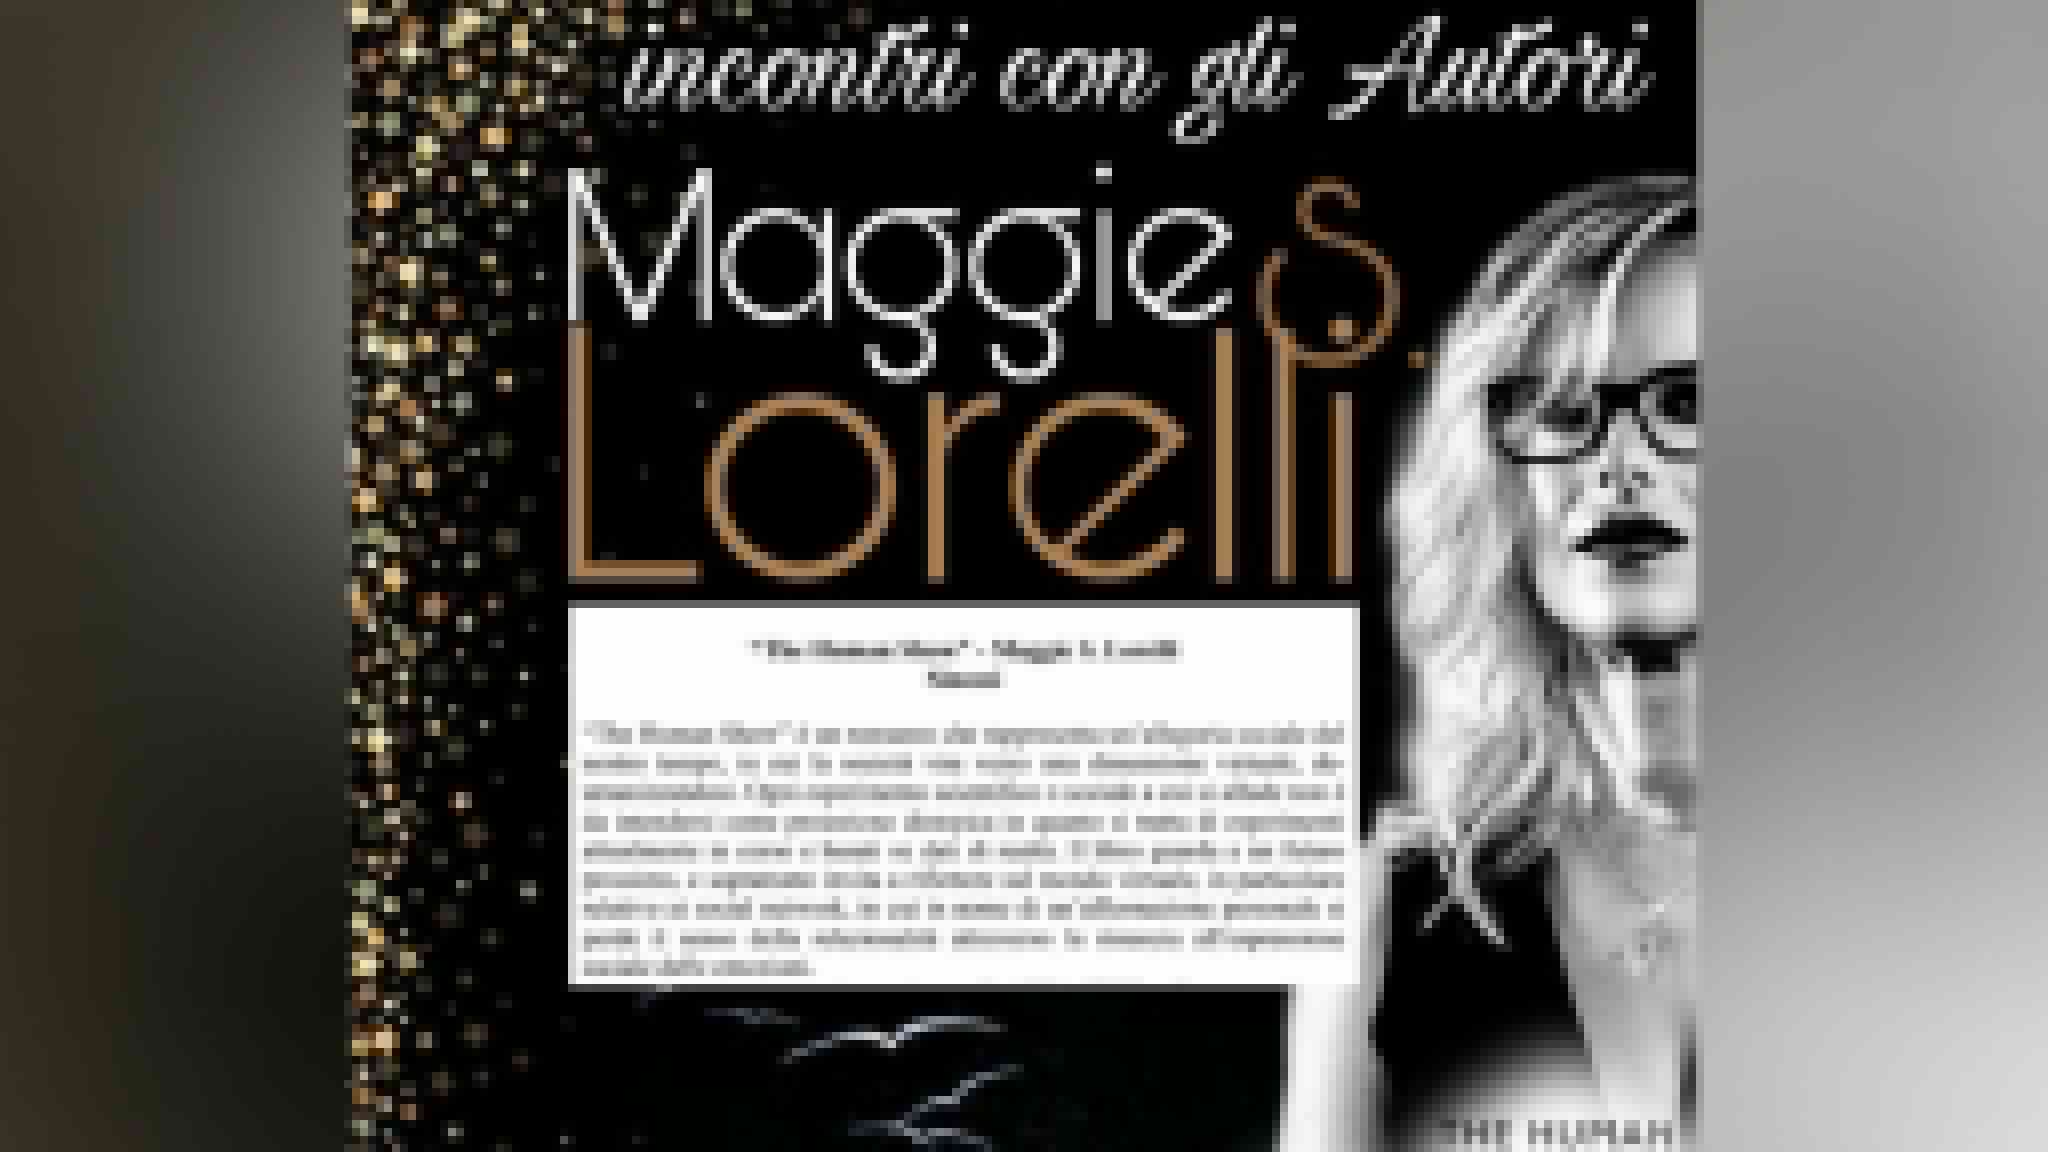 Arzachena:  Maggie S. Lorelli presenta 